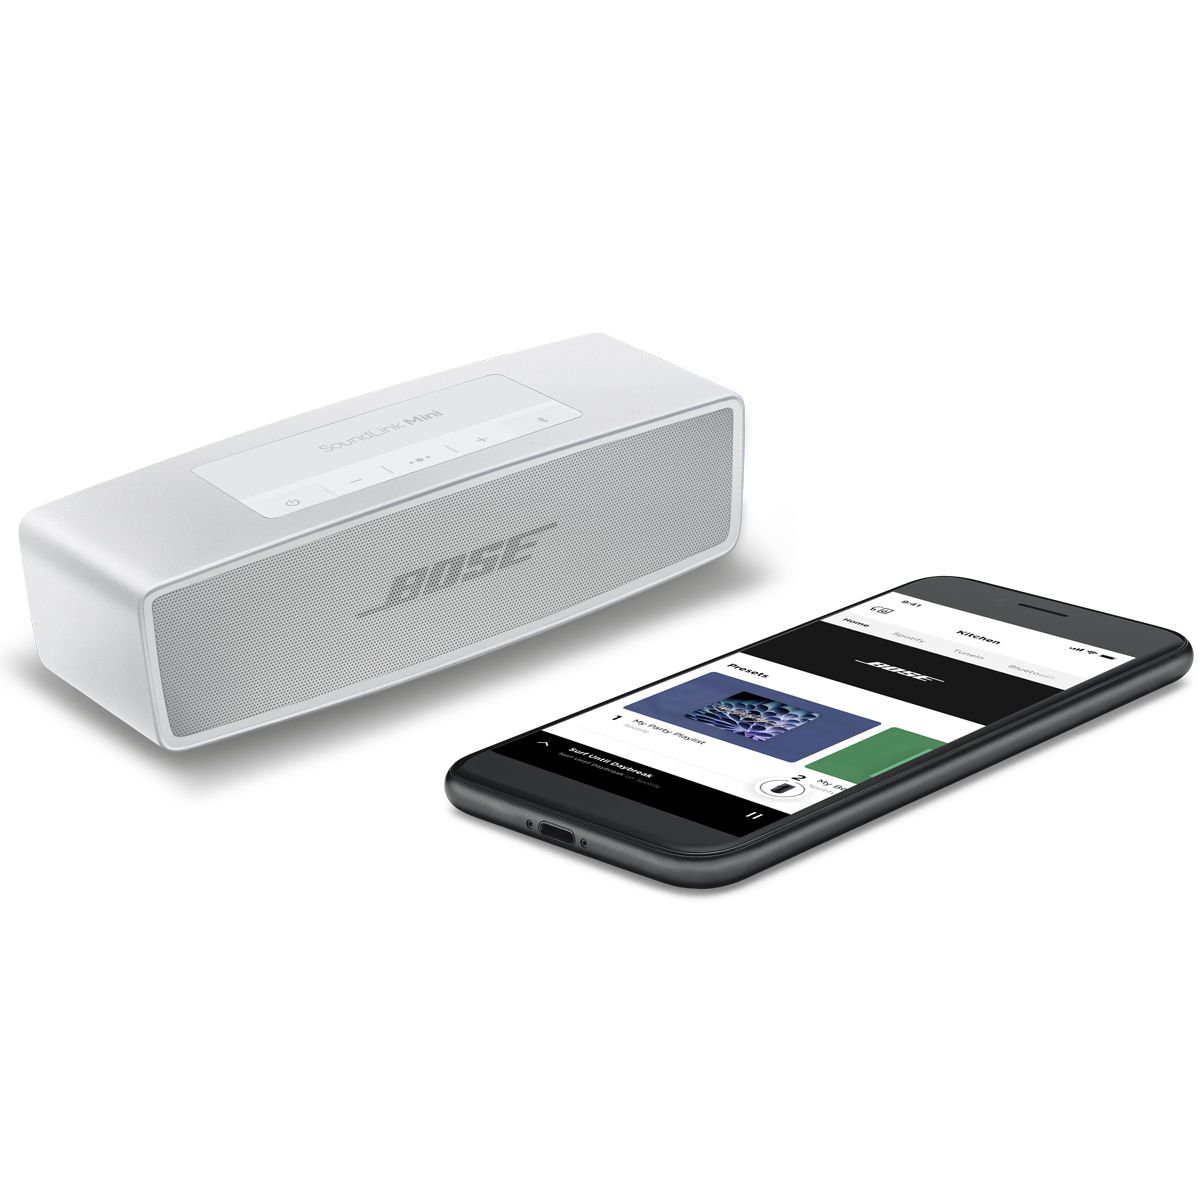 オーディオ機器 スピーカー Bose® SoundLink Mini II Special Edition